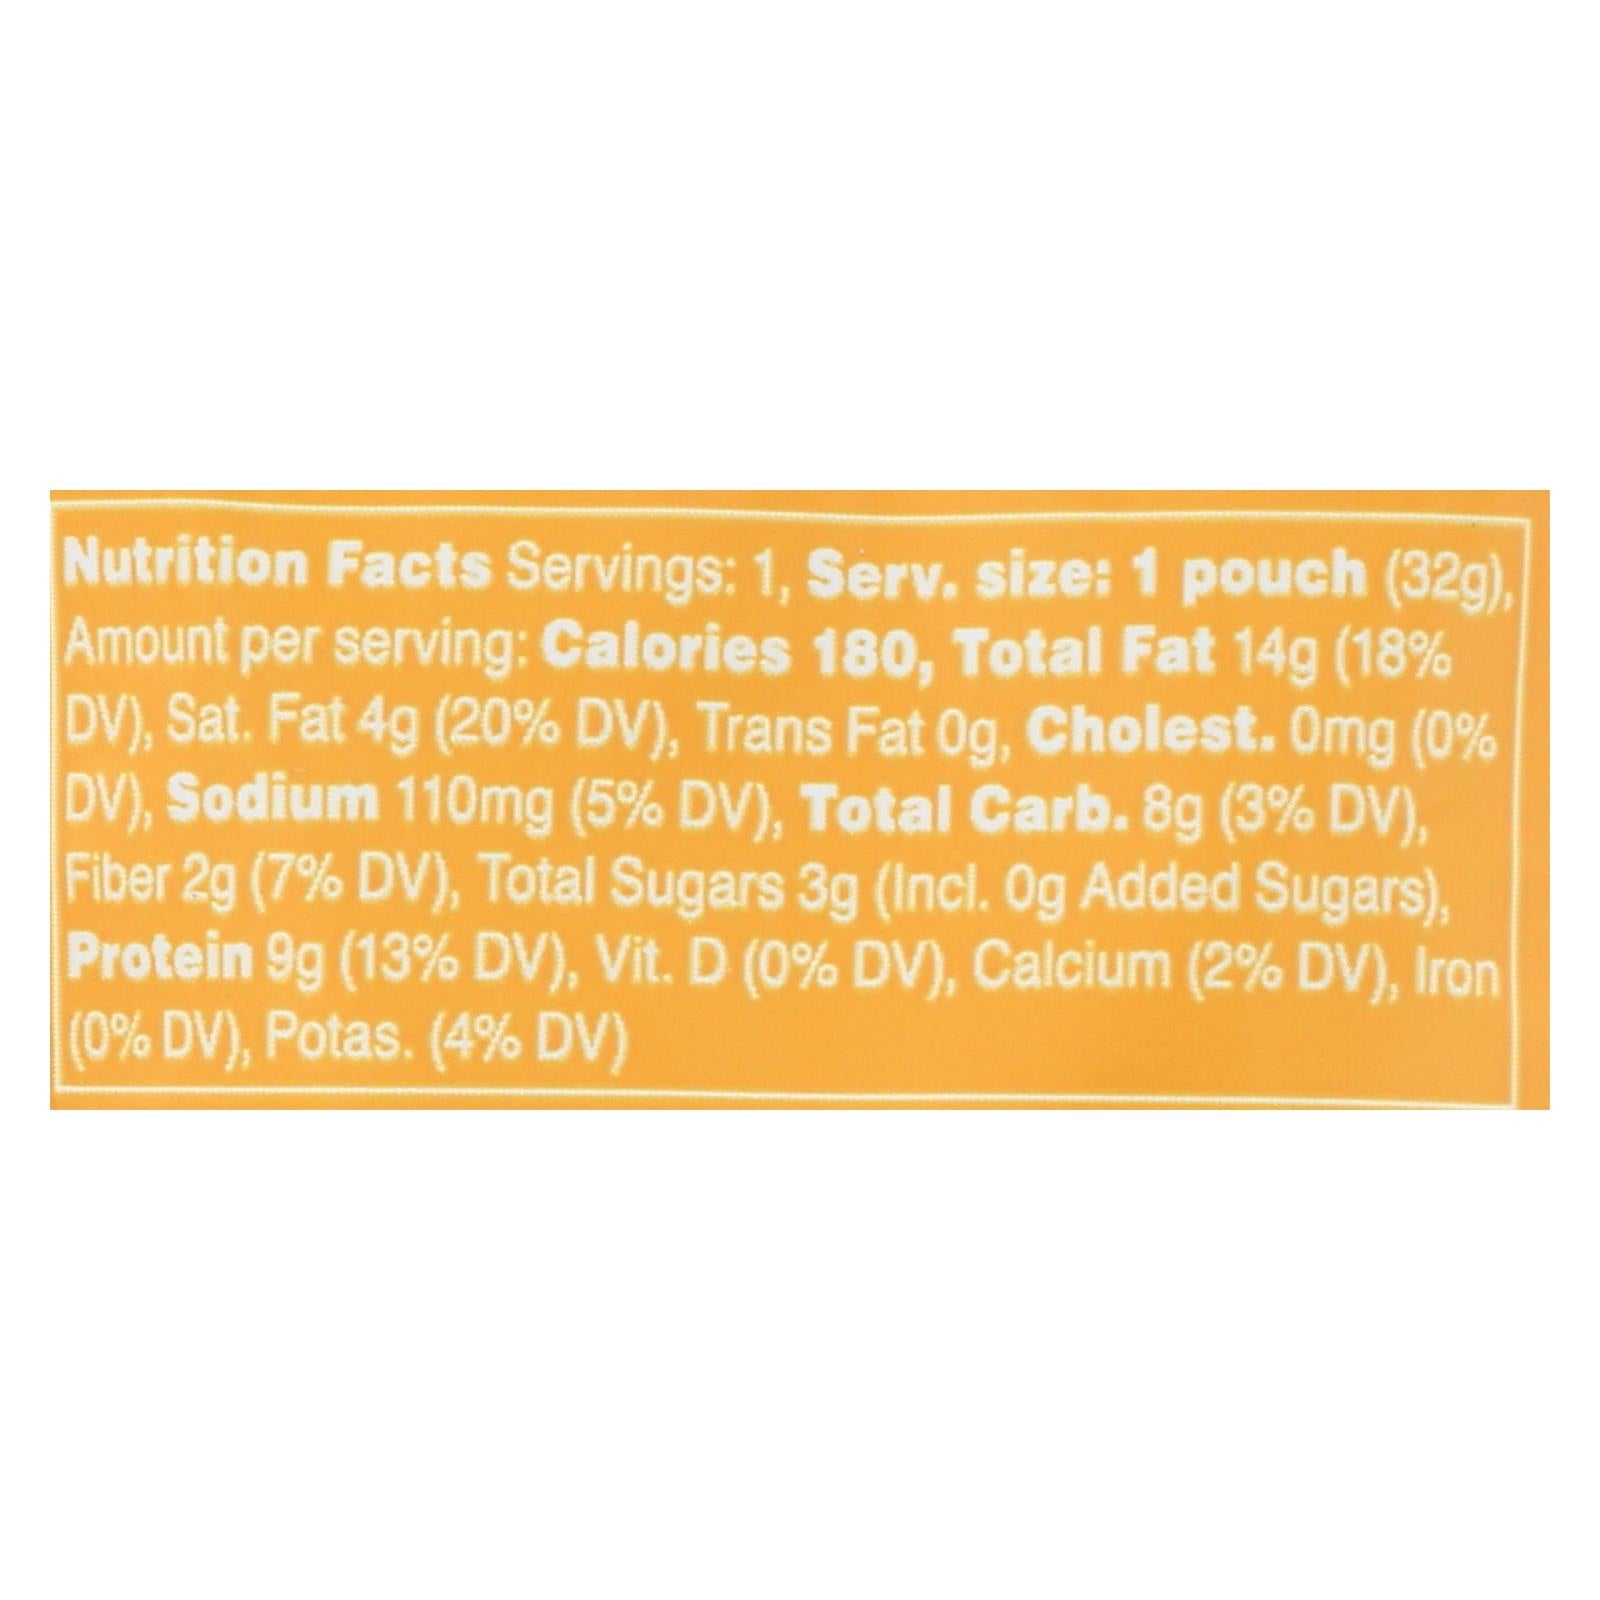 Rxbar, RxBar - Nut Butter - Honey Cinnamon - Case of 10 - 1.13 oz. (Pack of 10)